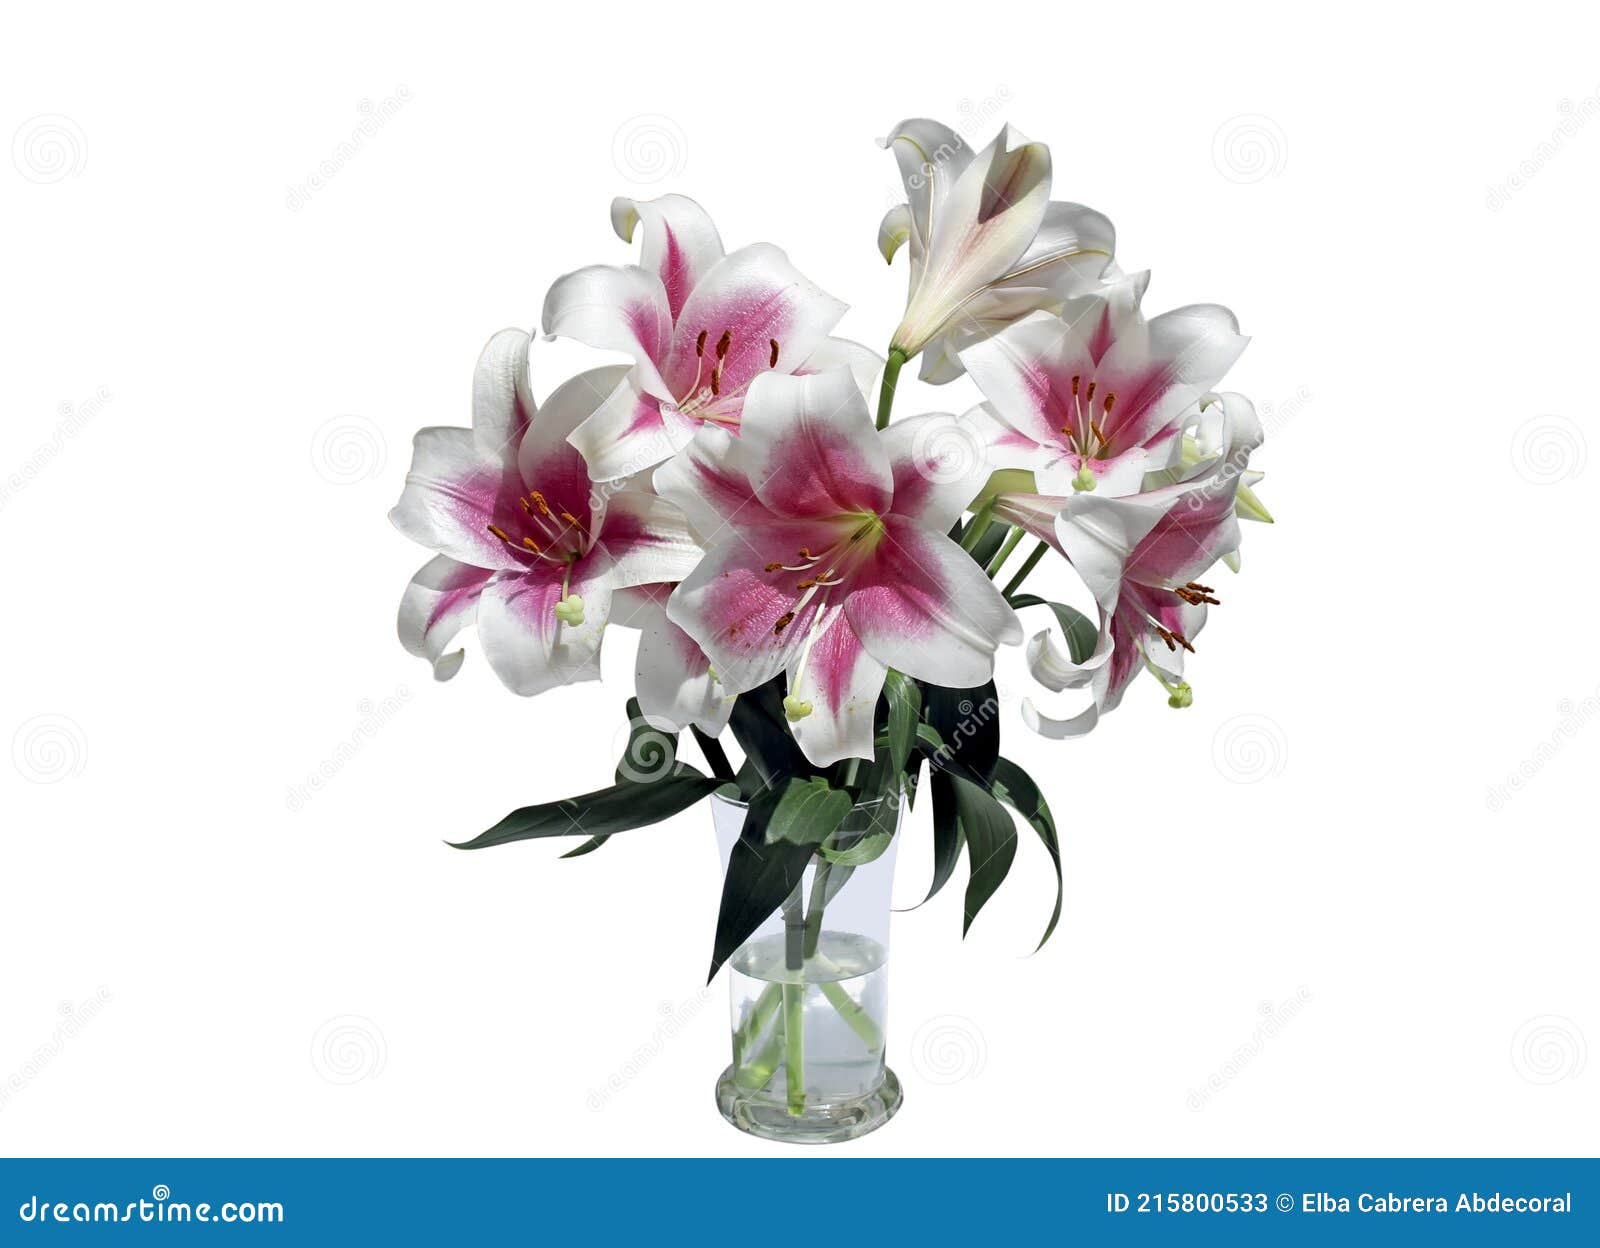 ramo flores de lirio rosa y blano en florero de vidrio sobre fondo blanco